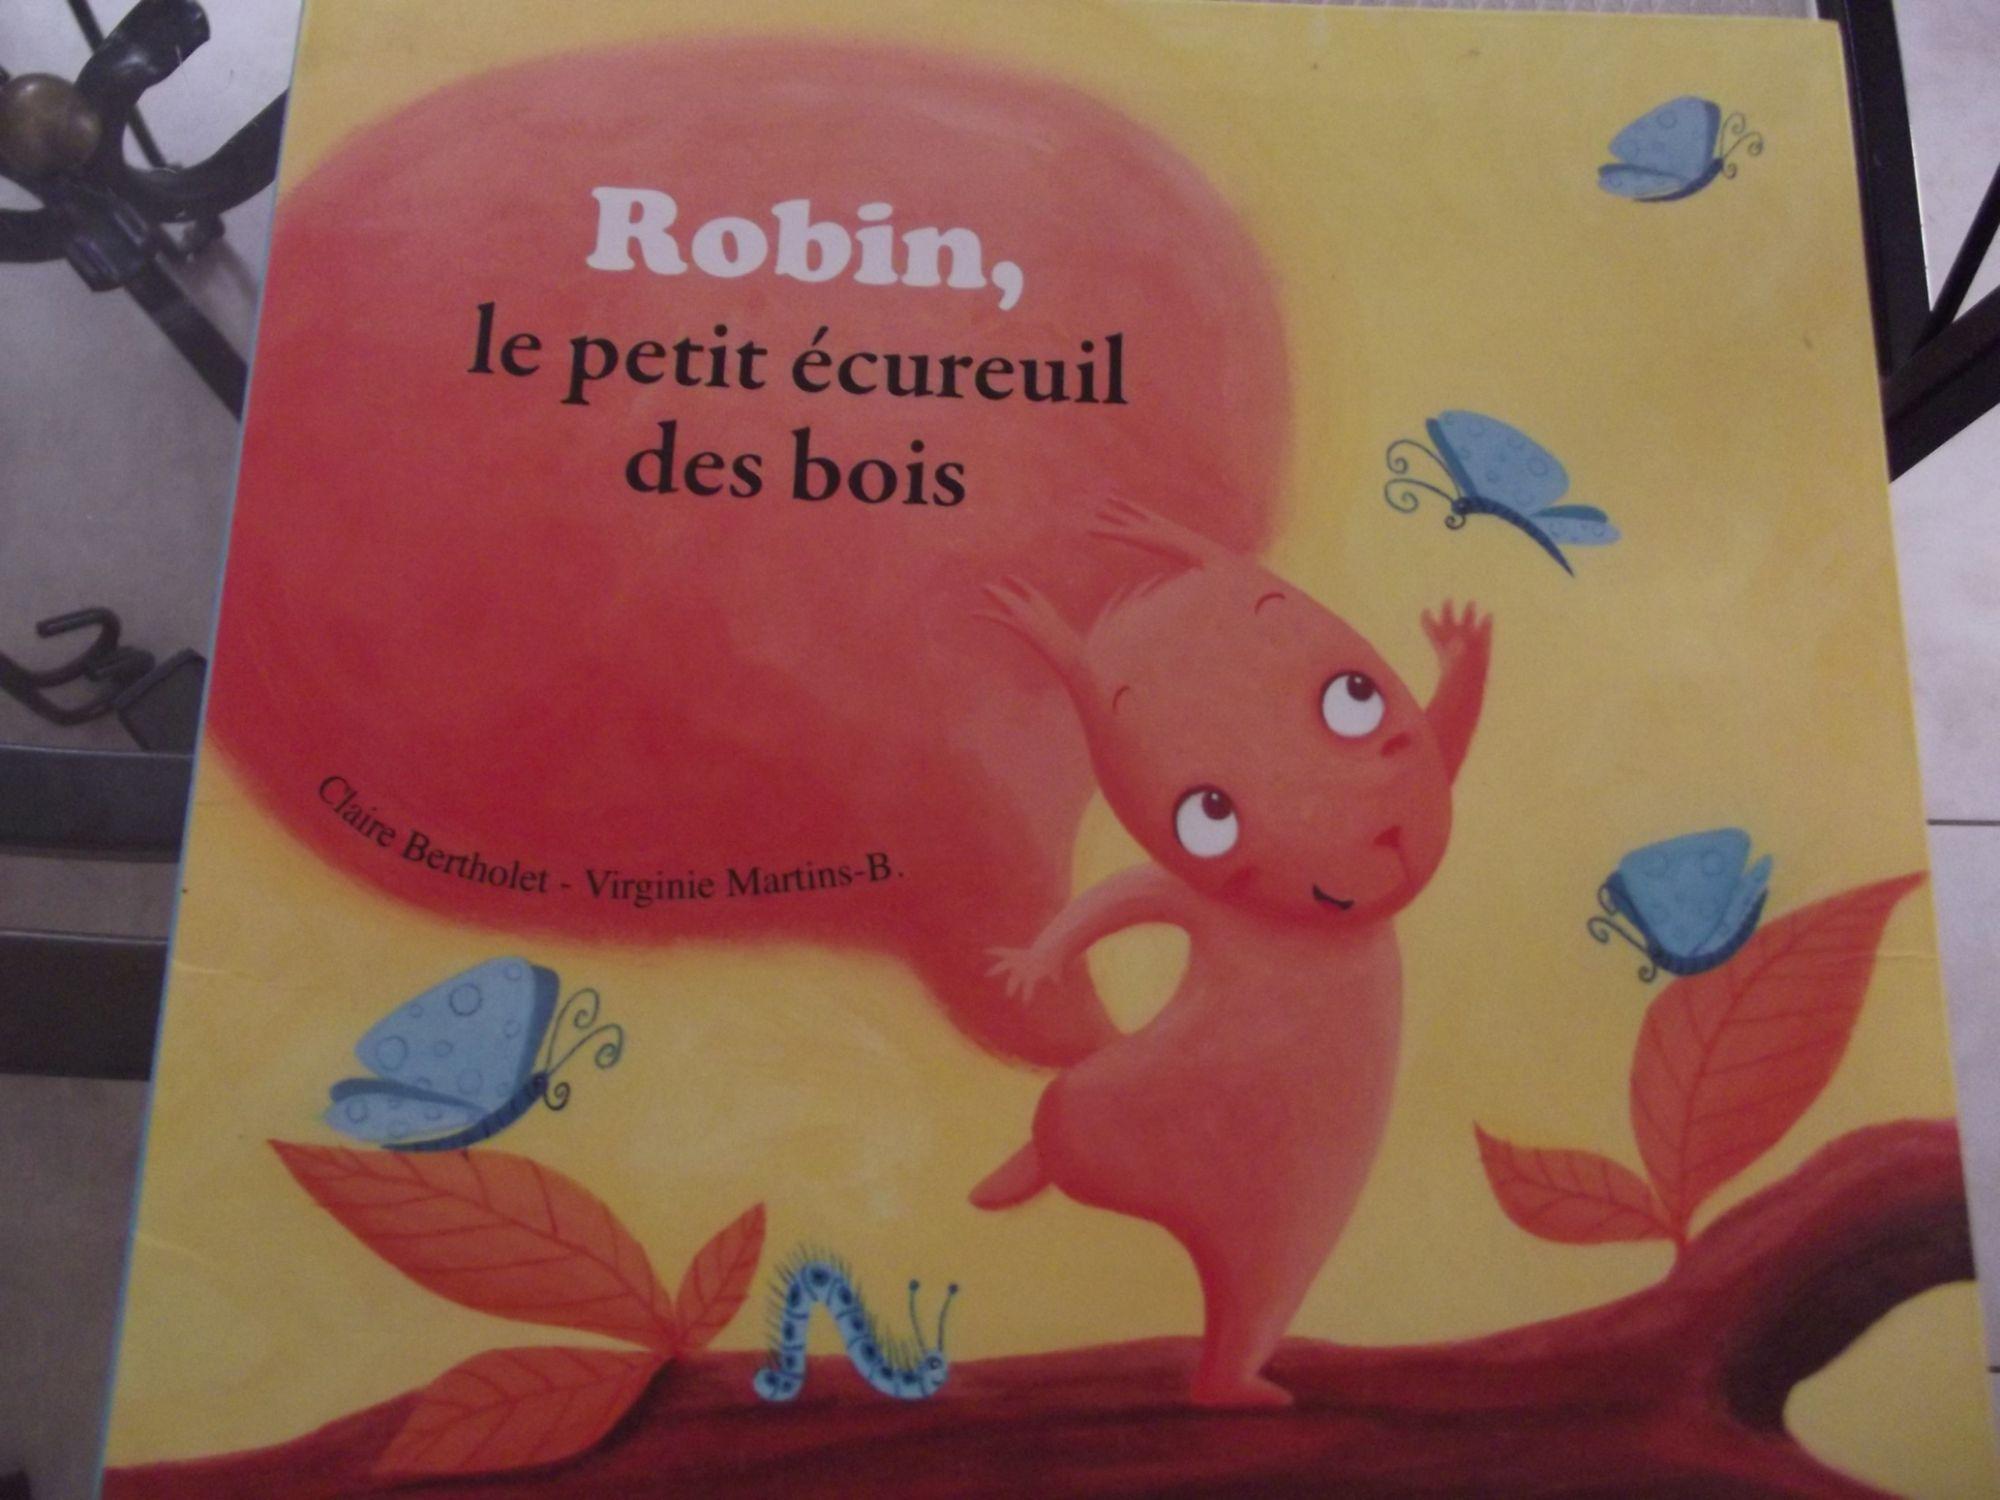 <a href="/node/15937">Robin, le petit écureuil des bois</a>